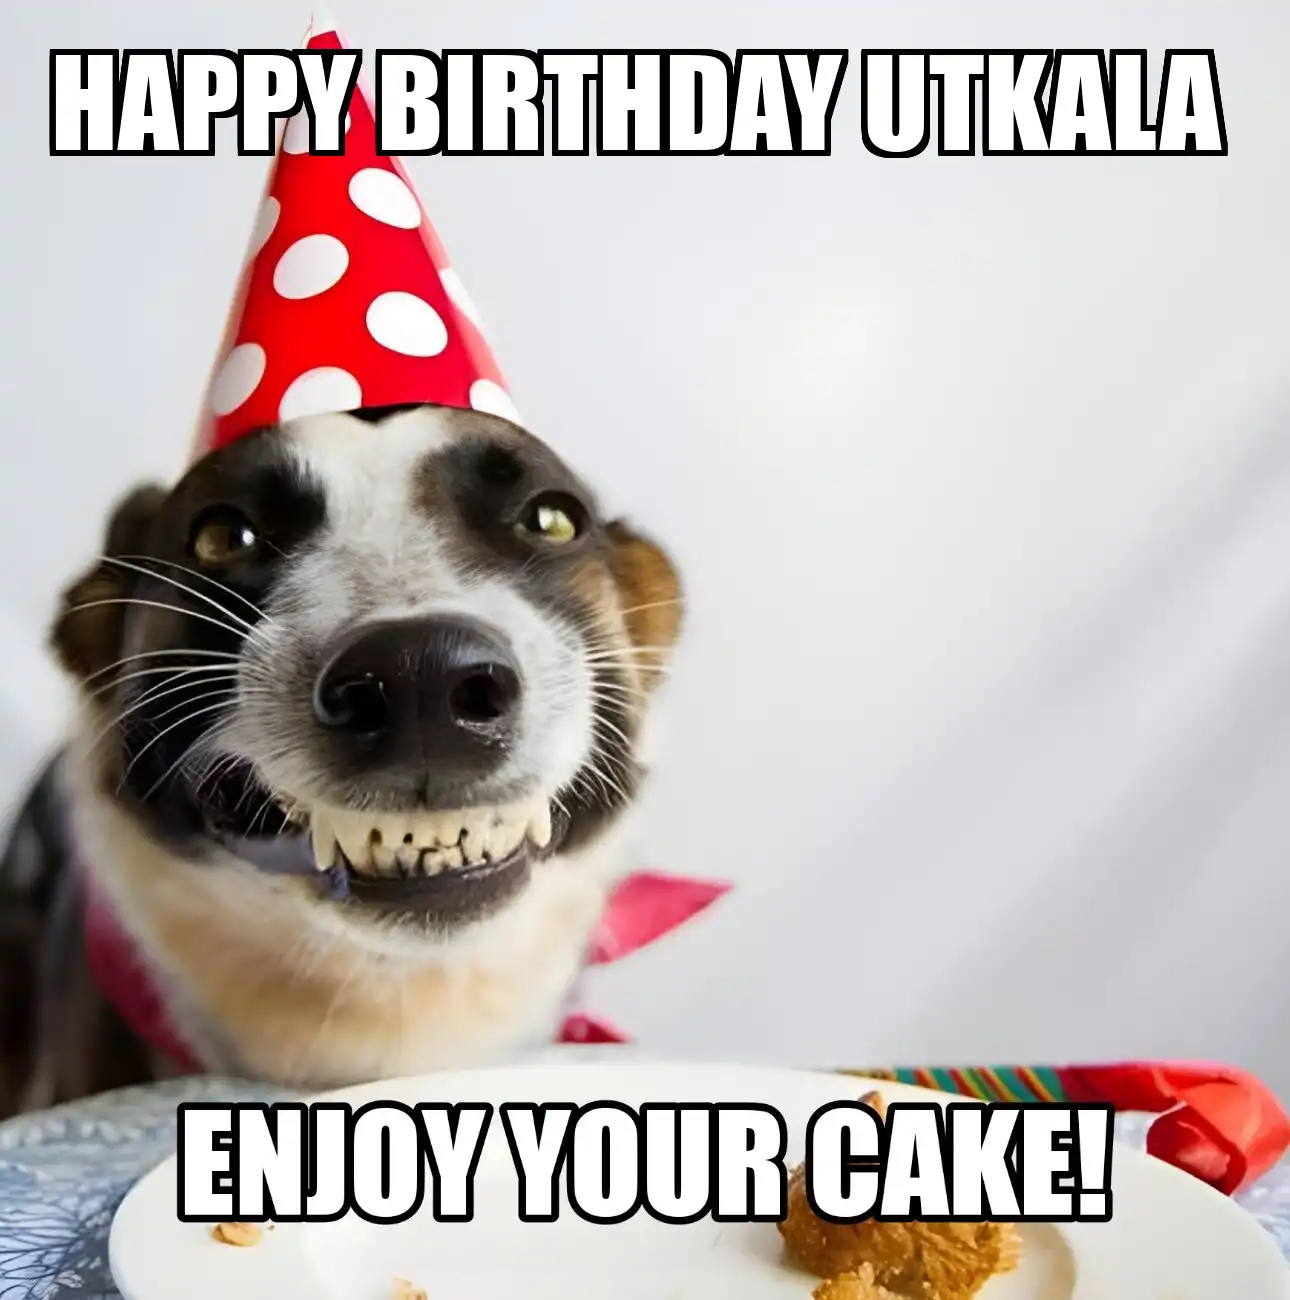 Happy Birthday Utkala Enjoy Your Cake Dog Meme